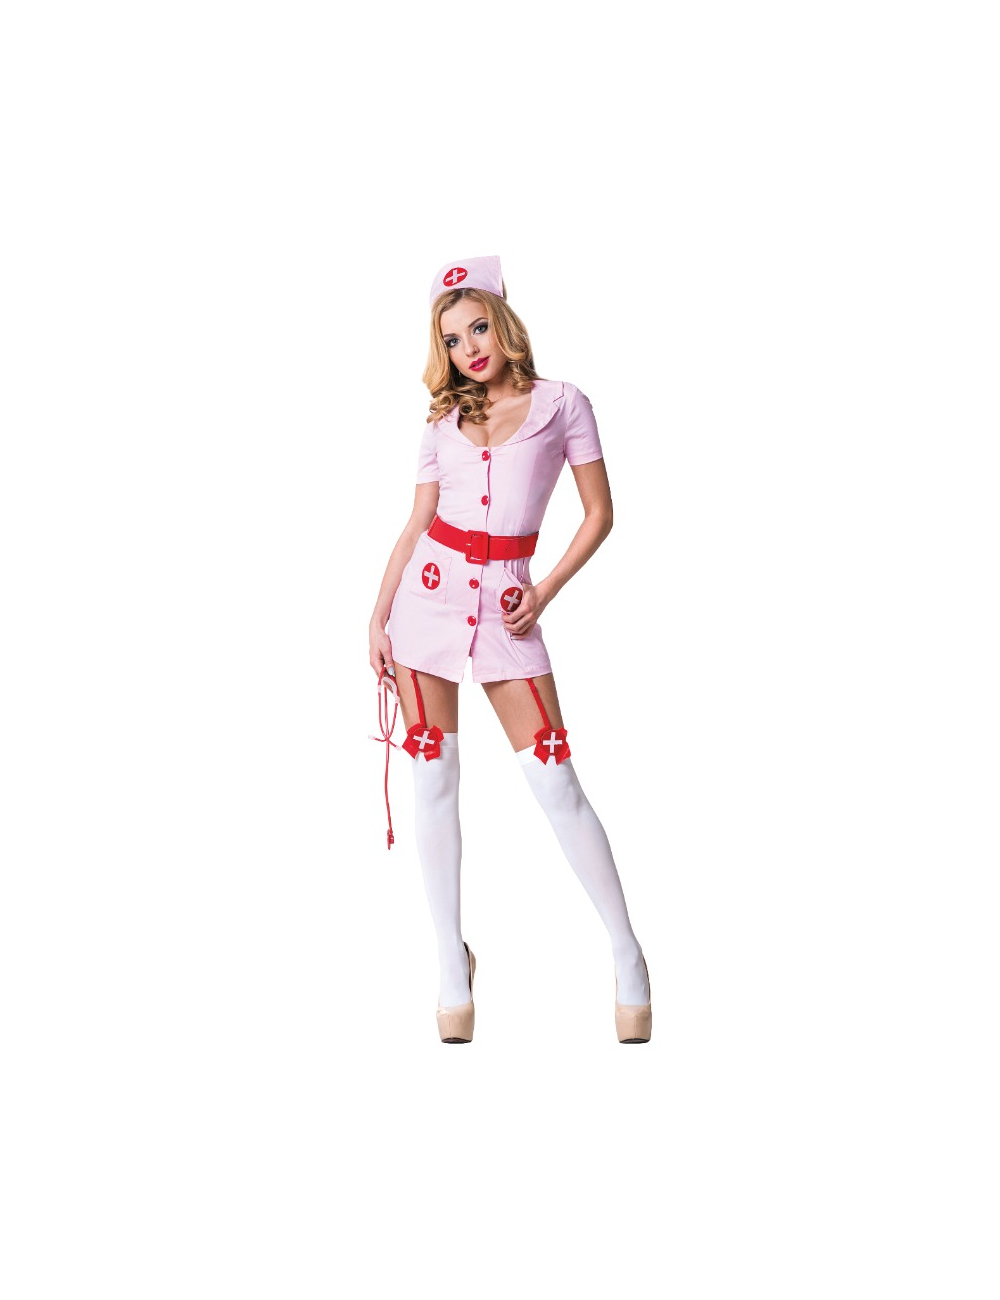 Lingerie - Costumes sexy - Le frivole - 02211 costume infirmière ensemble 3 pièces s / m - LE FRIVOLE COSTUMES